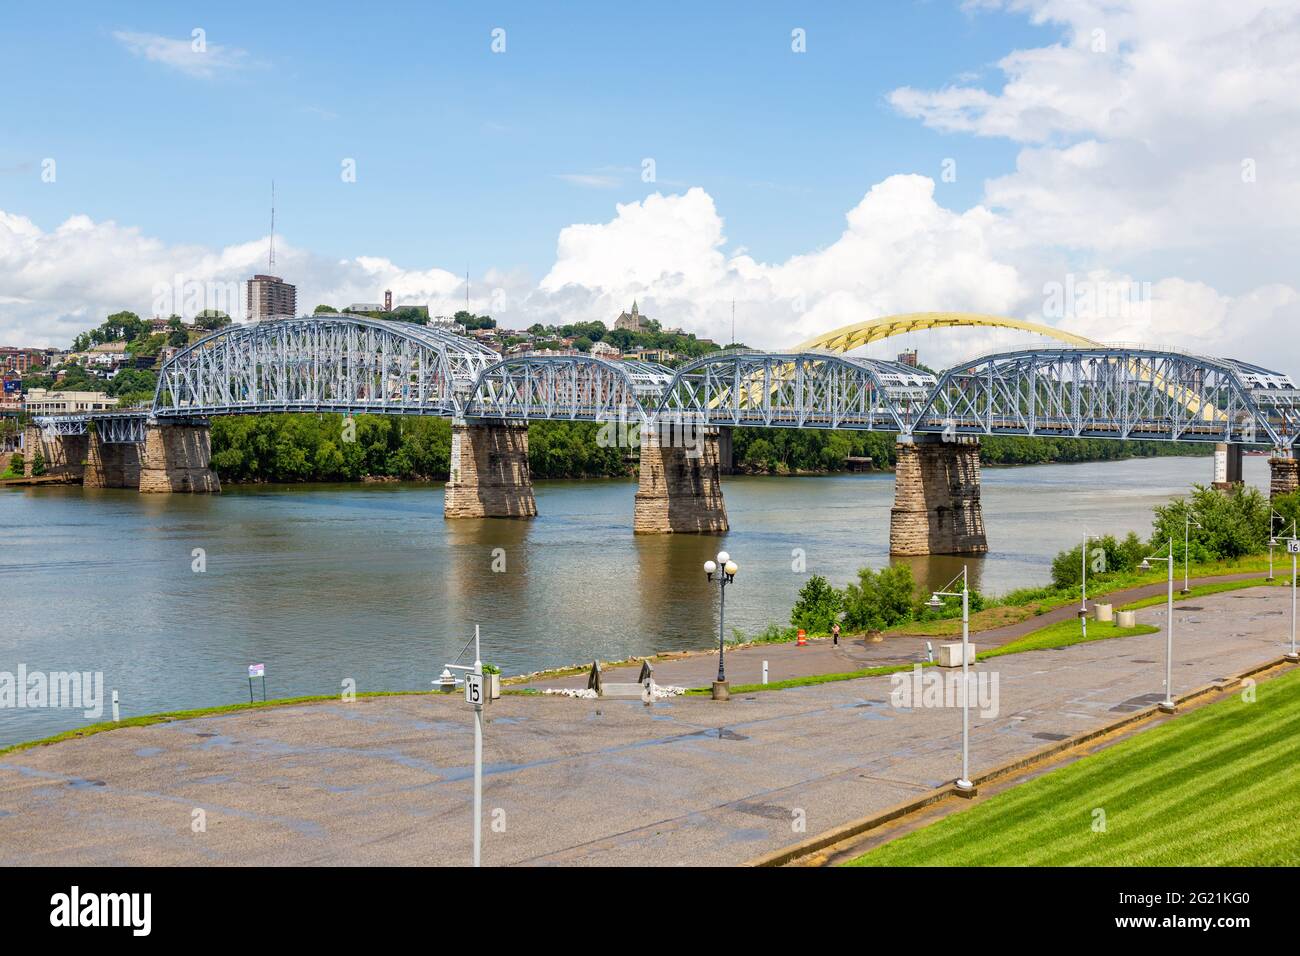 Le Purple People Bridge et le Daniel carter Beard Bridge s'étendent sur l'Ohio River de Newport, Kentucky à Cincinnati, Ohio, USA. Banque D'Images